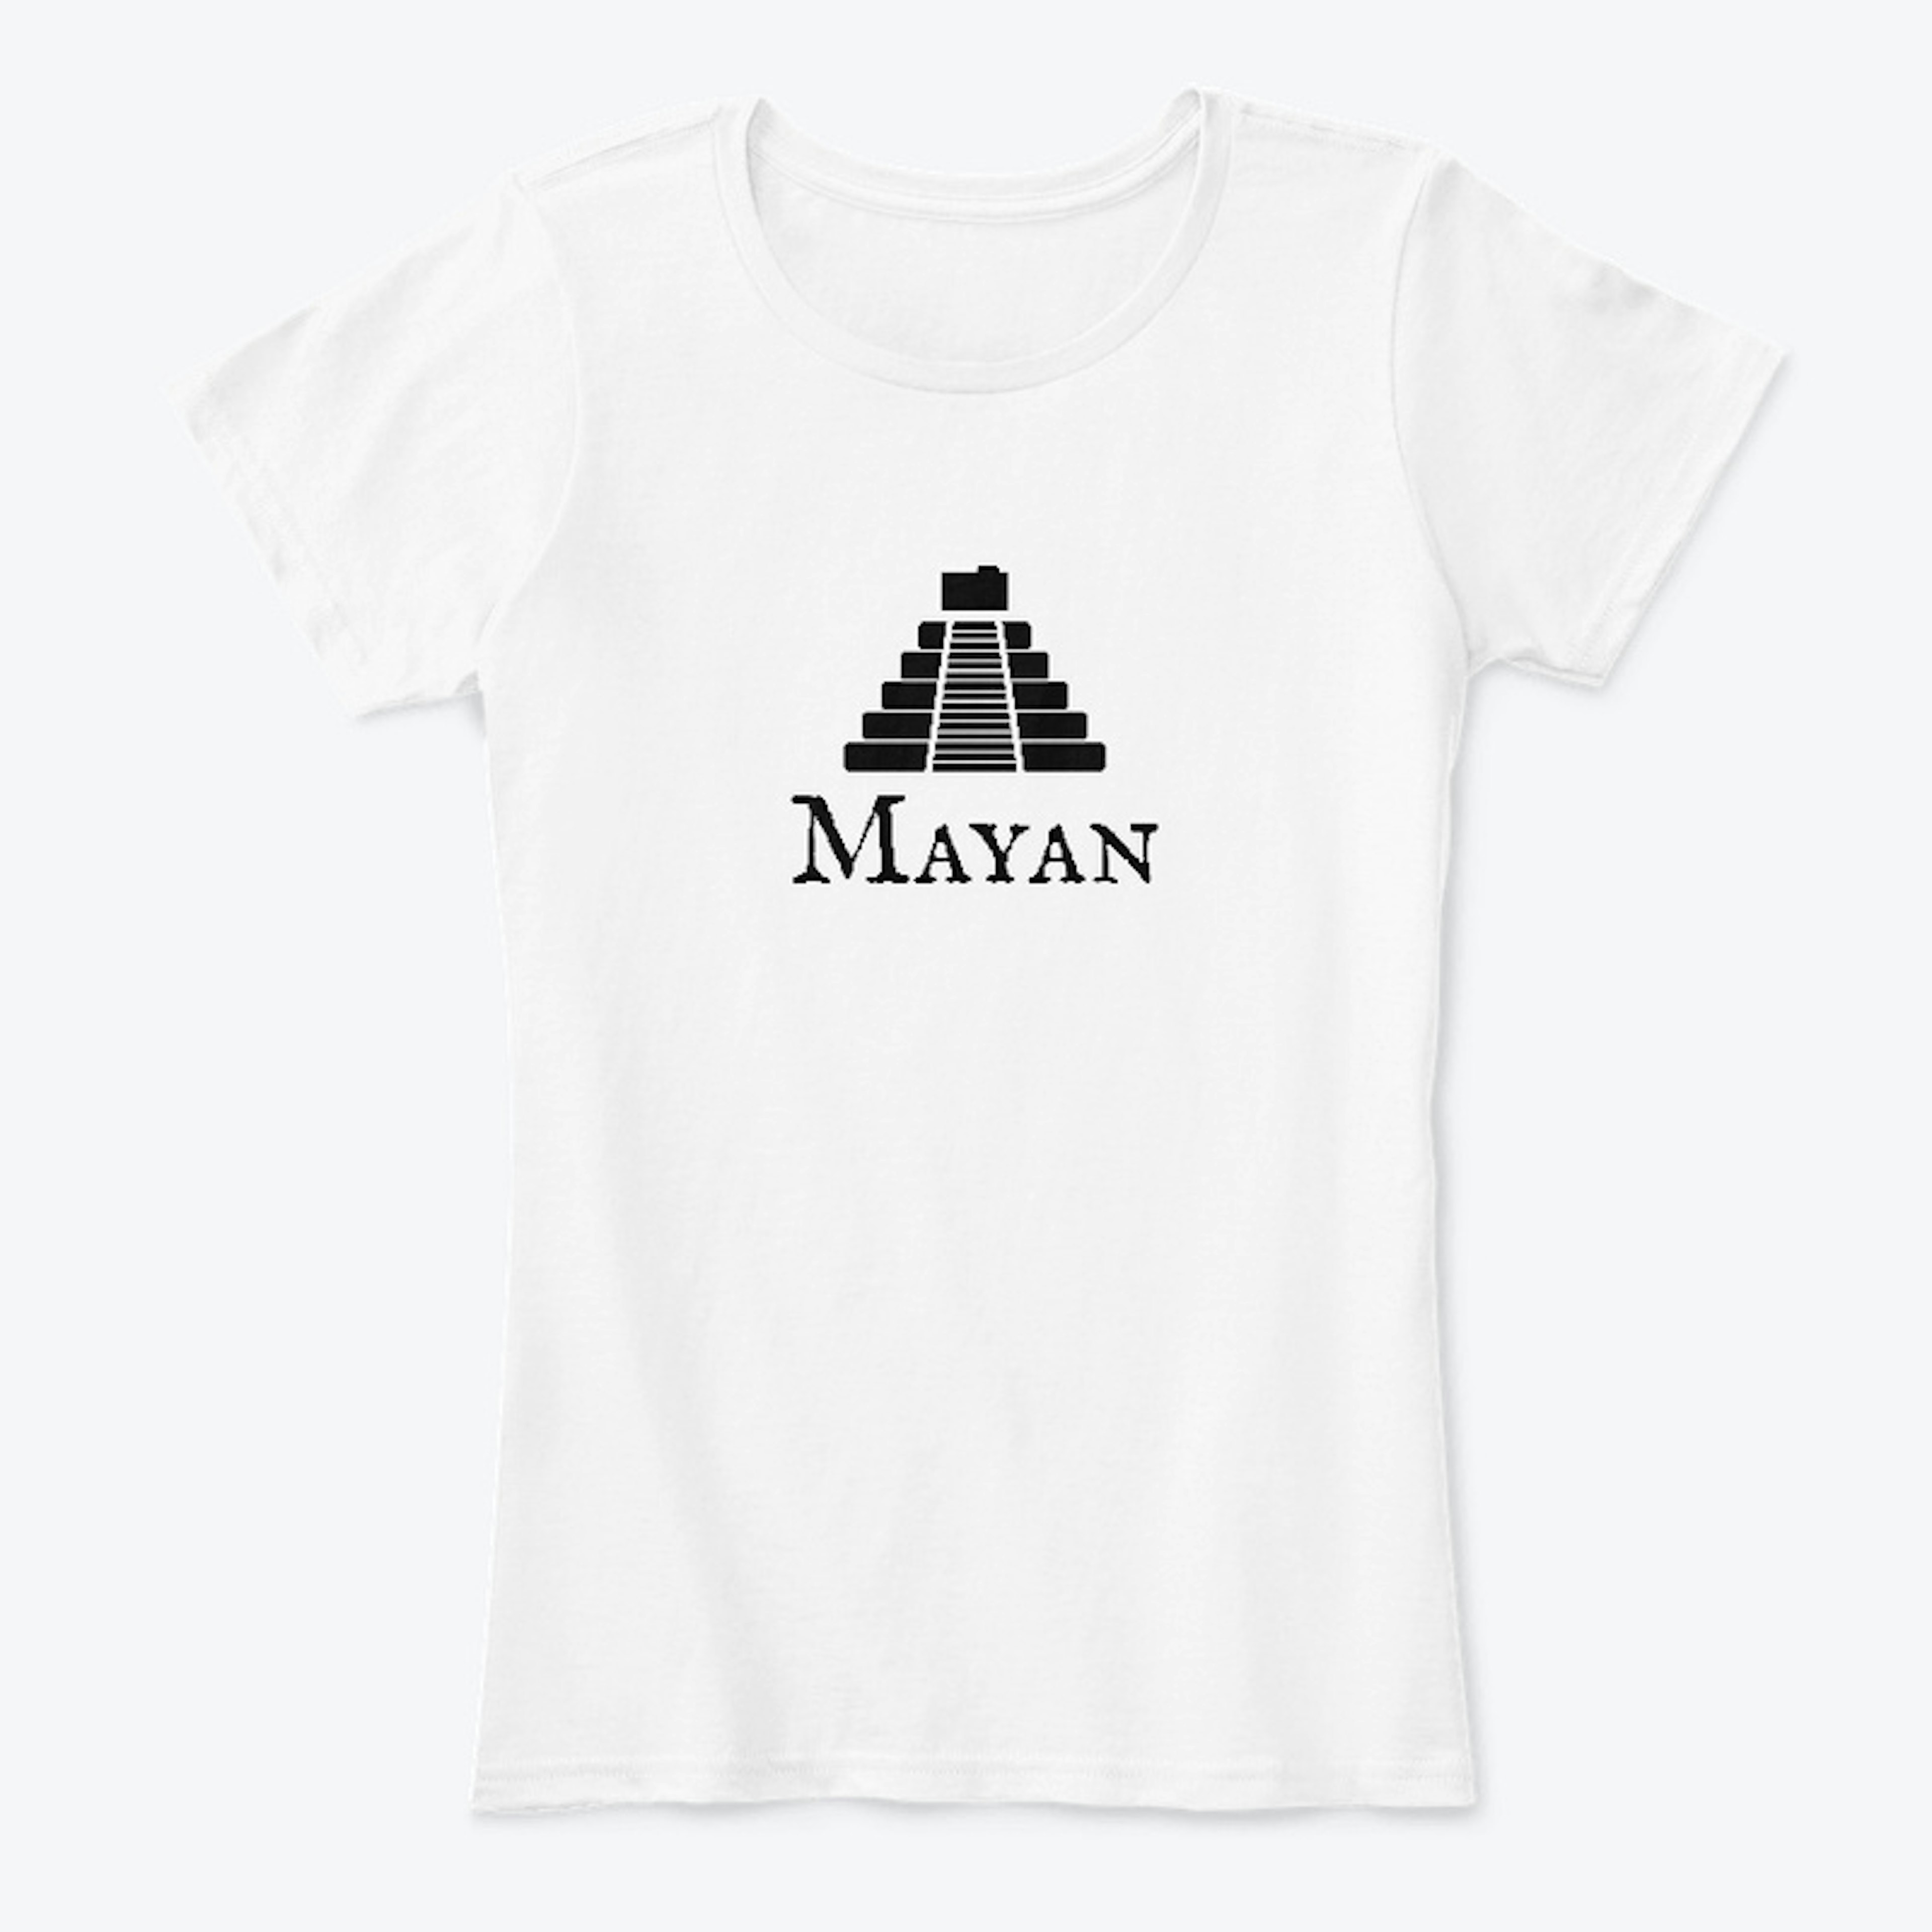 Mayan EDMS black logo